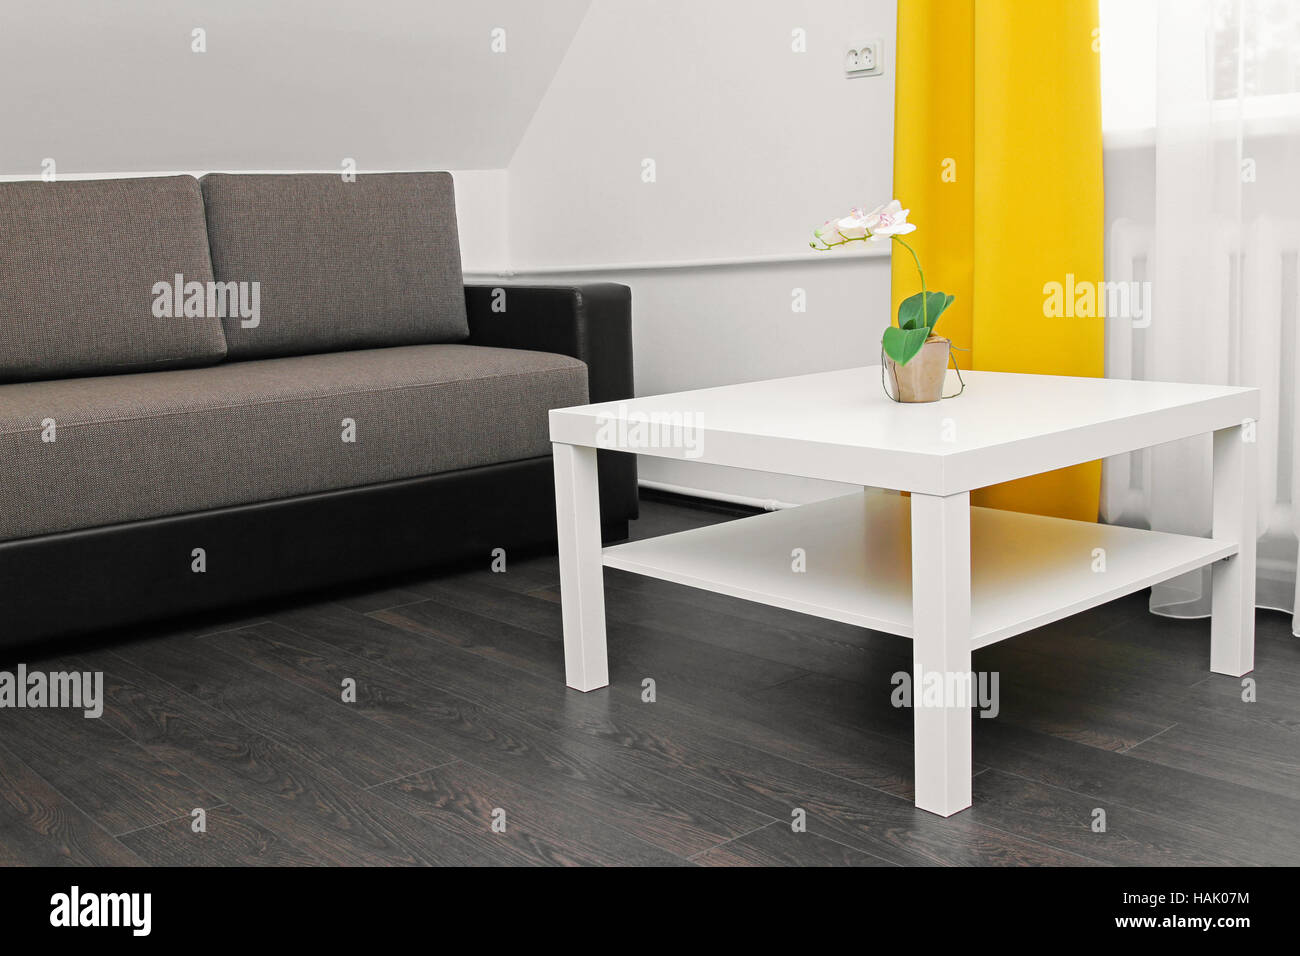 Appartamento luminoso interno con divano, tavolino da caffè e tende gialle Foto Stock